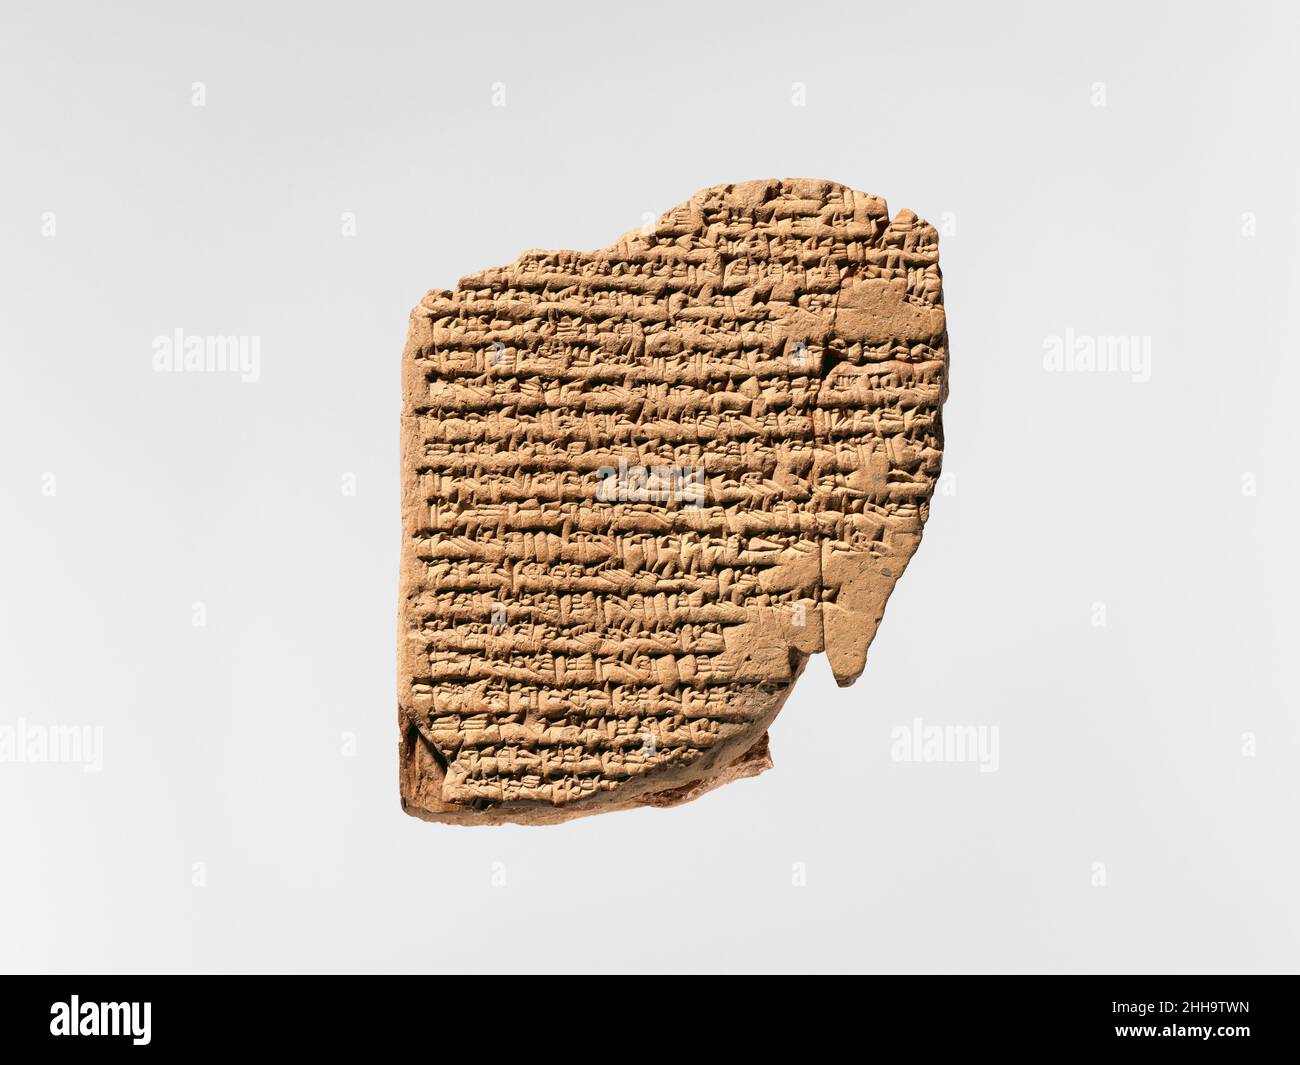 Keilschrift: A-She-er gi-ta, Balag an Innin/Ishtar Ca. 2nd.–1st. Jahrhundert v. Chr. Seleucid oder Parthian Diese Keilschrift zeichnet einen Teil eines Balags auf, ein Klagelied, das ein Saiteninstrument begleitete. Der Text ist typisch für die Seleukiden-Zeit, wo die Wörter in sumerischem Stil geschrieben werden, aber mit einer großen Anzahl von Zeilen, begleitet von einer akkadischen Übersetzung. Sumerisch war die Sprache, die im südlichen Mesopotamien bis etwa 2000 v. Chr. gesprochen wurde, während Akkadisch wahrscheinlich aufgehört hatte, eine gesprochene Sprache zu sein, als diese Tafel geschrieben wurde, nachdem sie durch Aramäisch und Griechisch in weiten Teilen ersetzt wurde Stockfoto